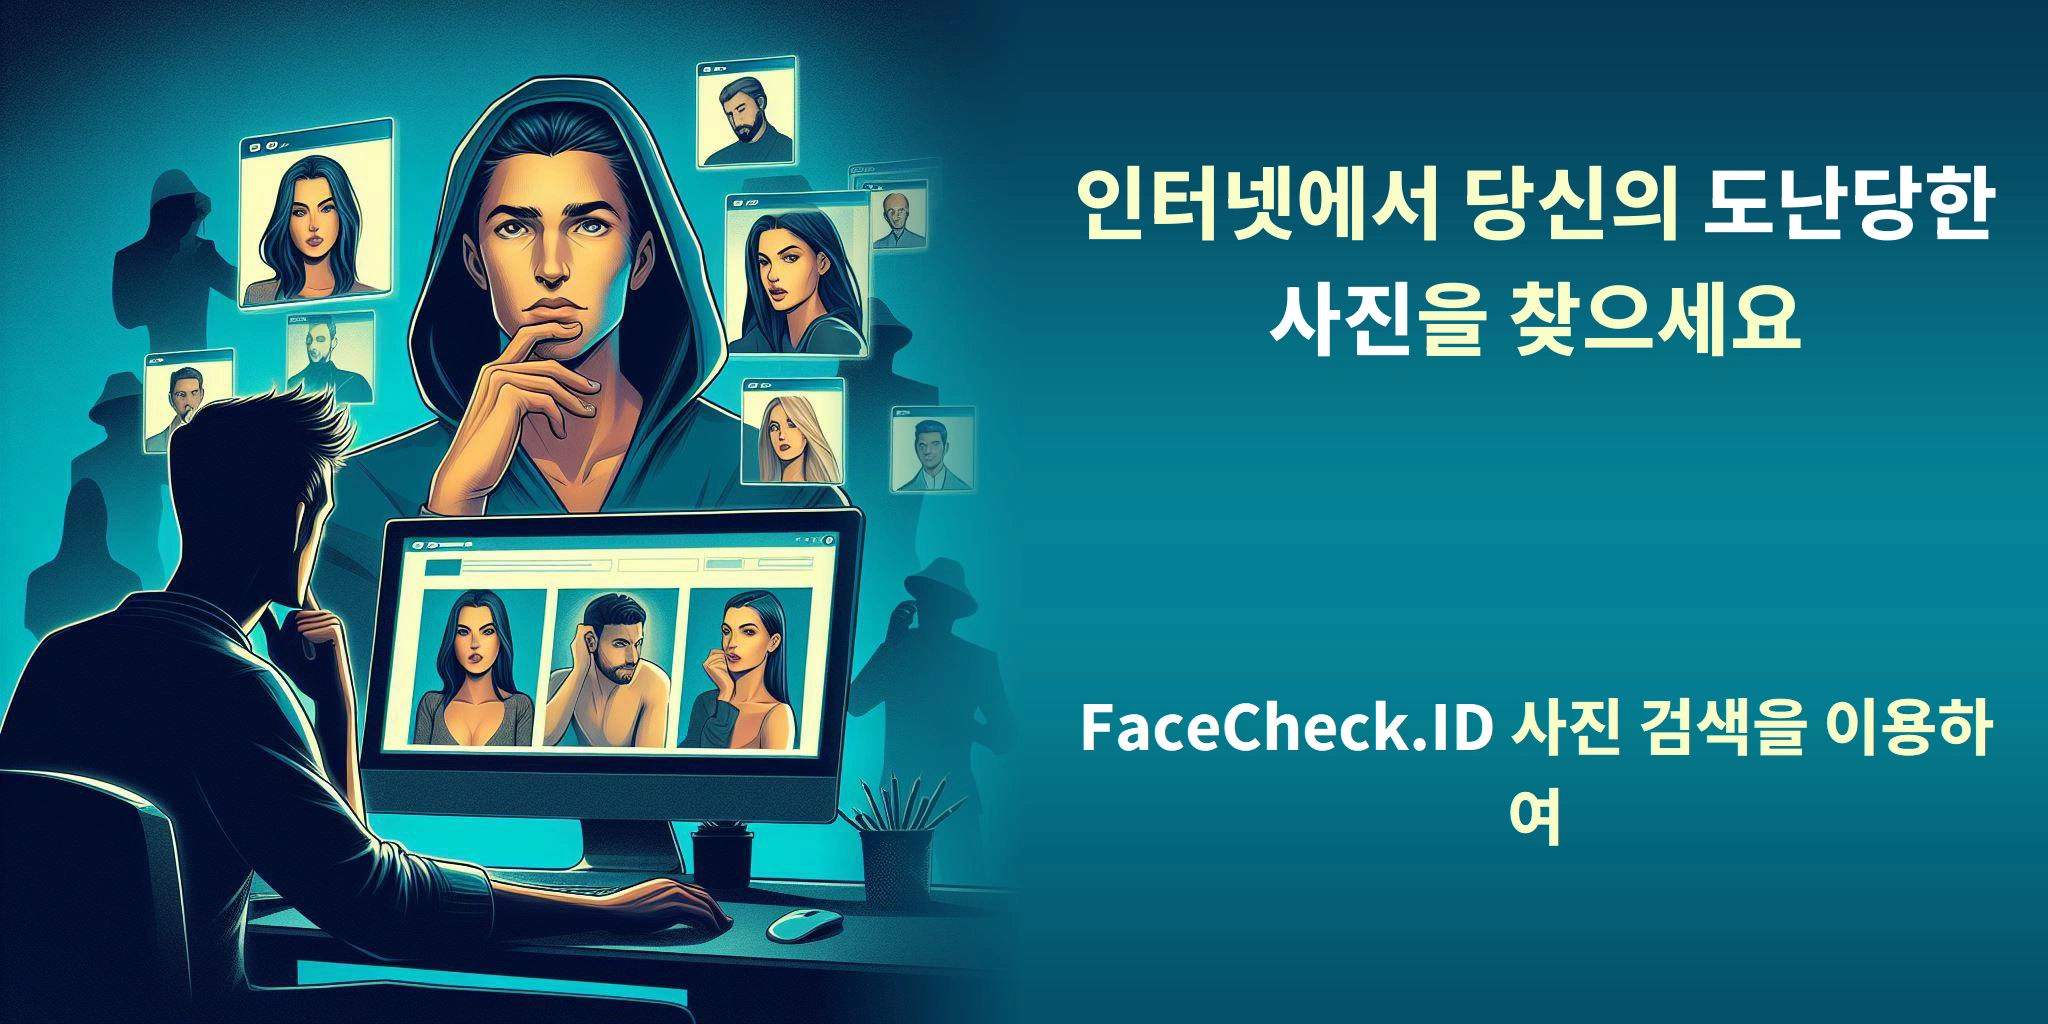 인터넷에서 당신의 도난당한 사진을 찾으세요 FaceCheck.ID 사진 검색을 이용하여